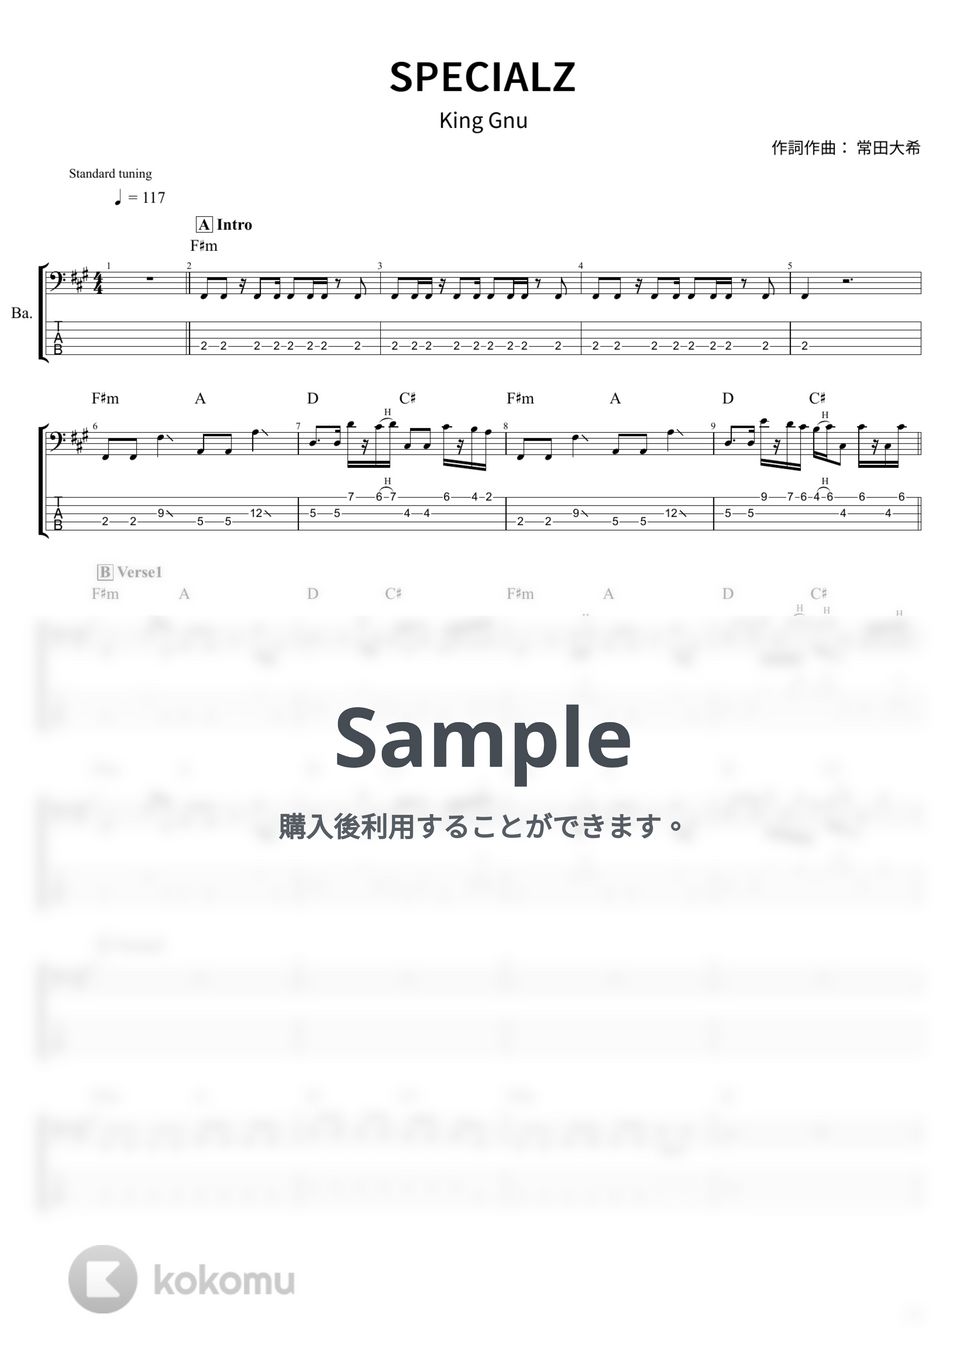 King Gnu - SPECIALZ (ベース Tab譜 5弦) by T's bass score